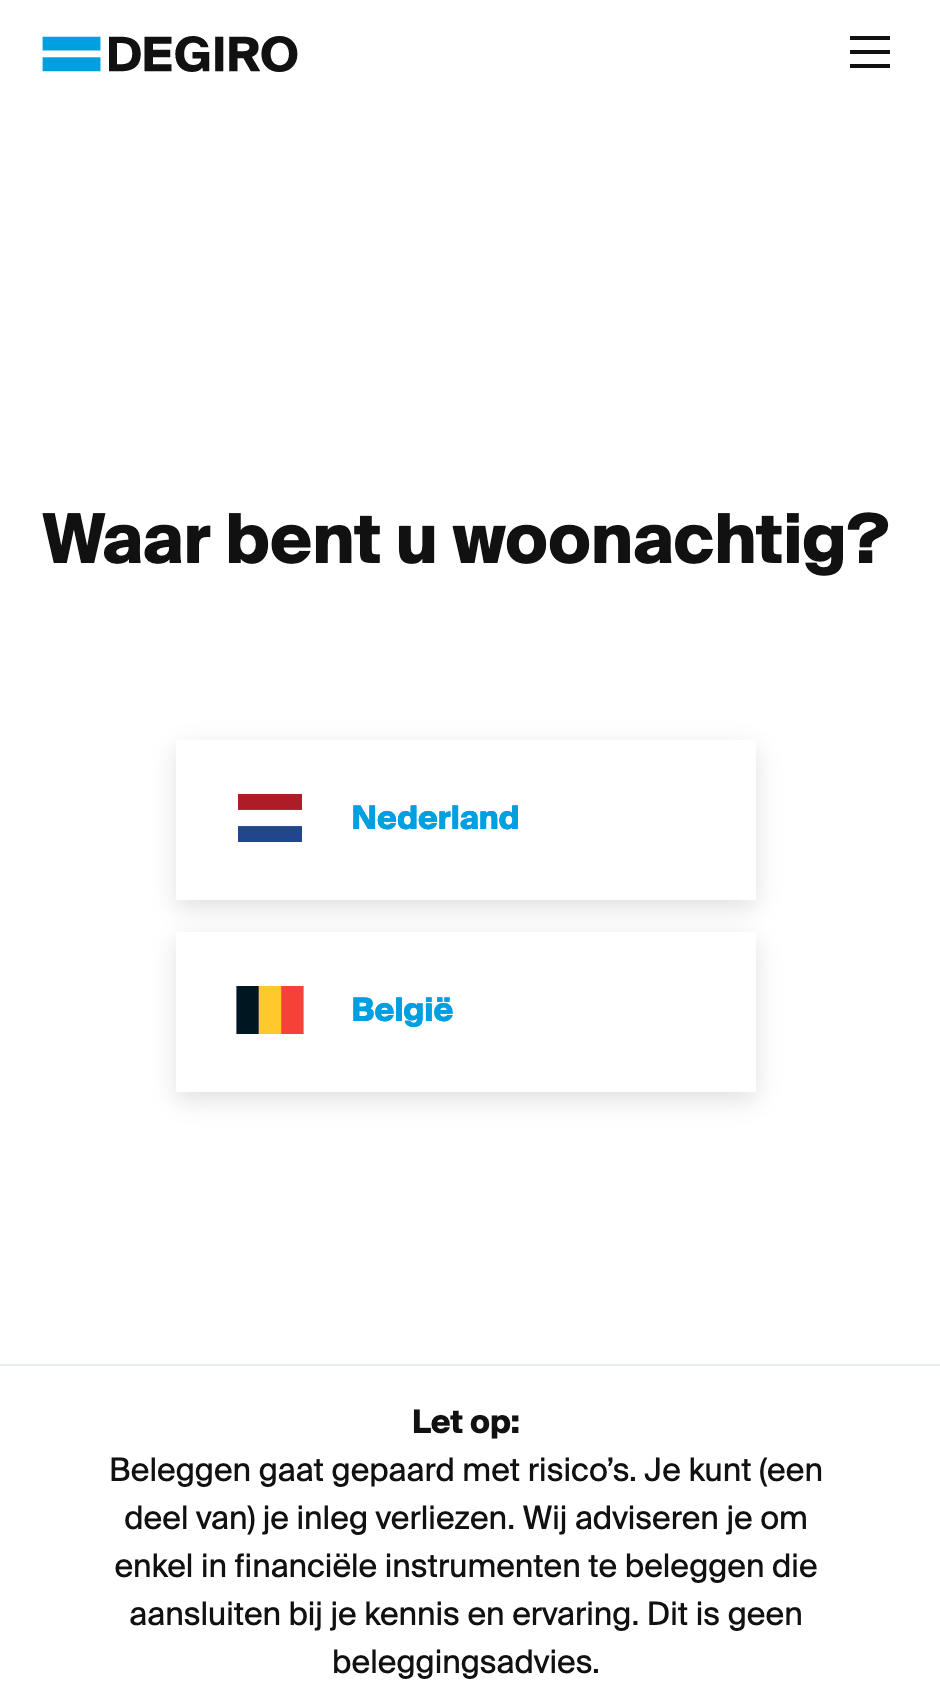 Choisis ton pays de résidence en tant que Belge en t'inscrivant à DEGIRO